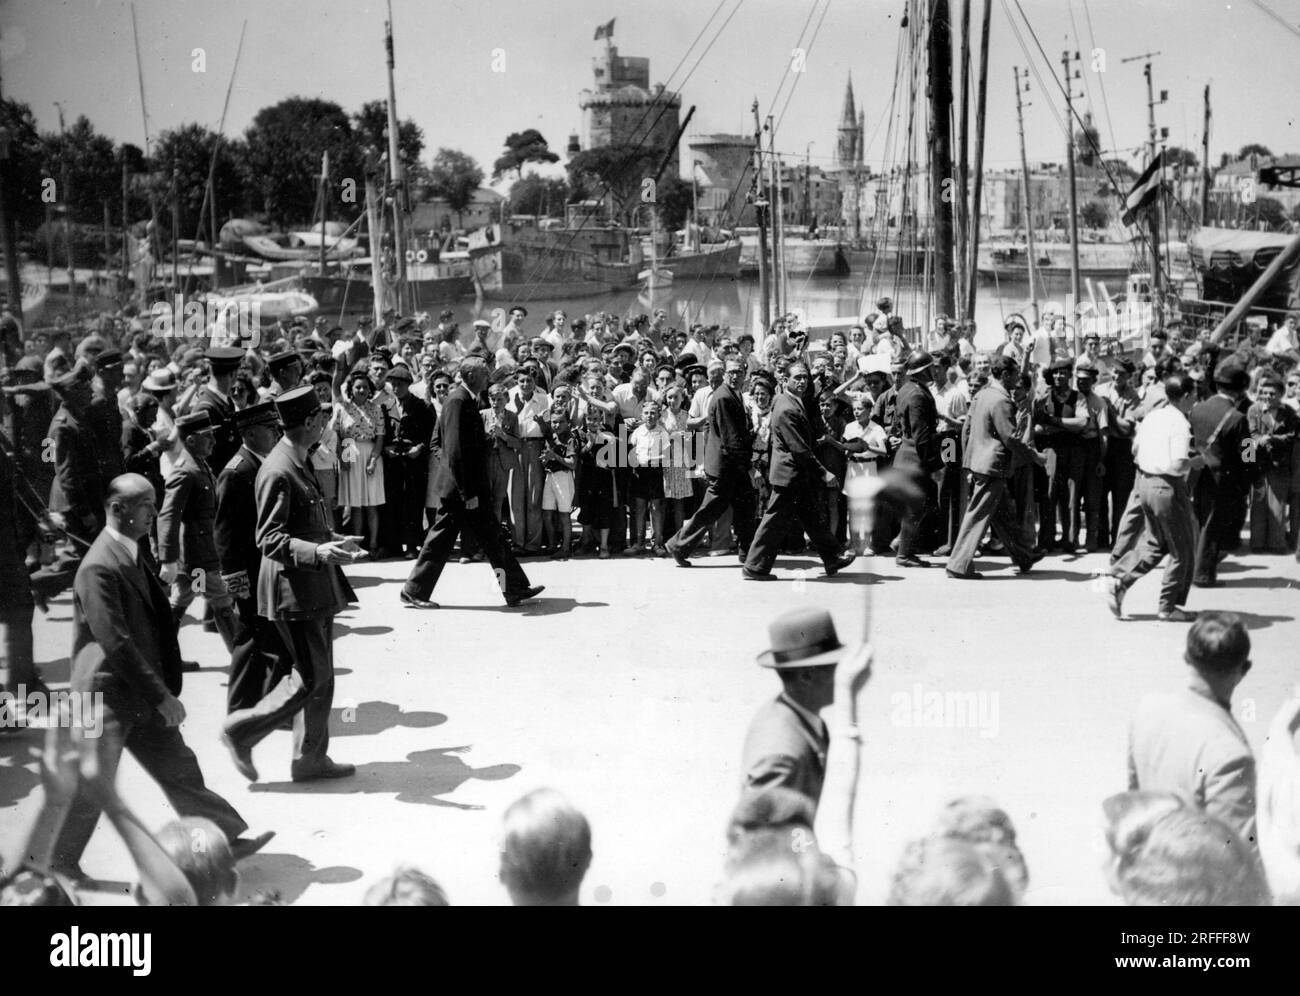 Voyage du General Charles de Gaulle (1890-1970) a la Rochelle - Photographie 25 juillet 1945 Foto Stock